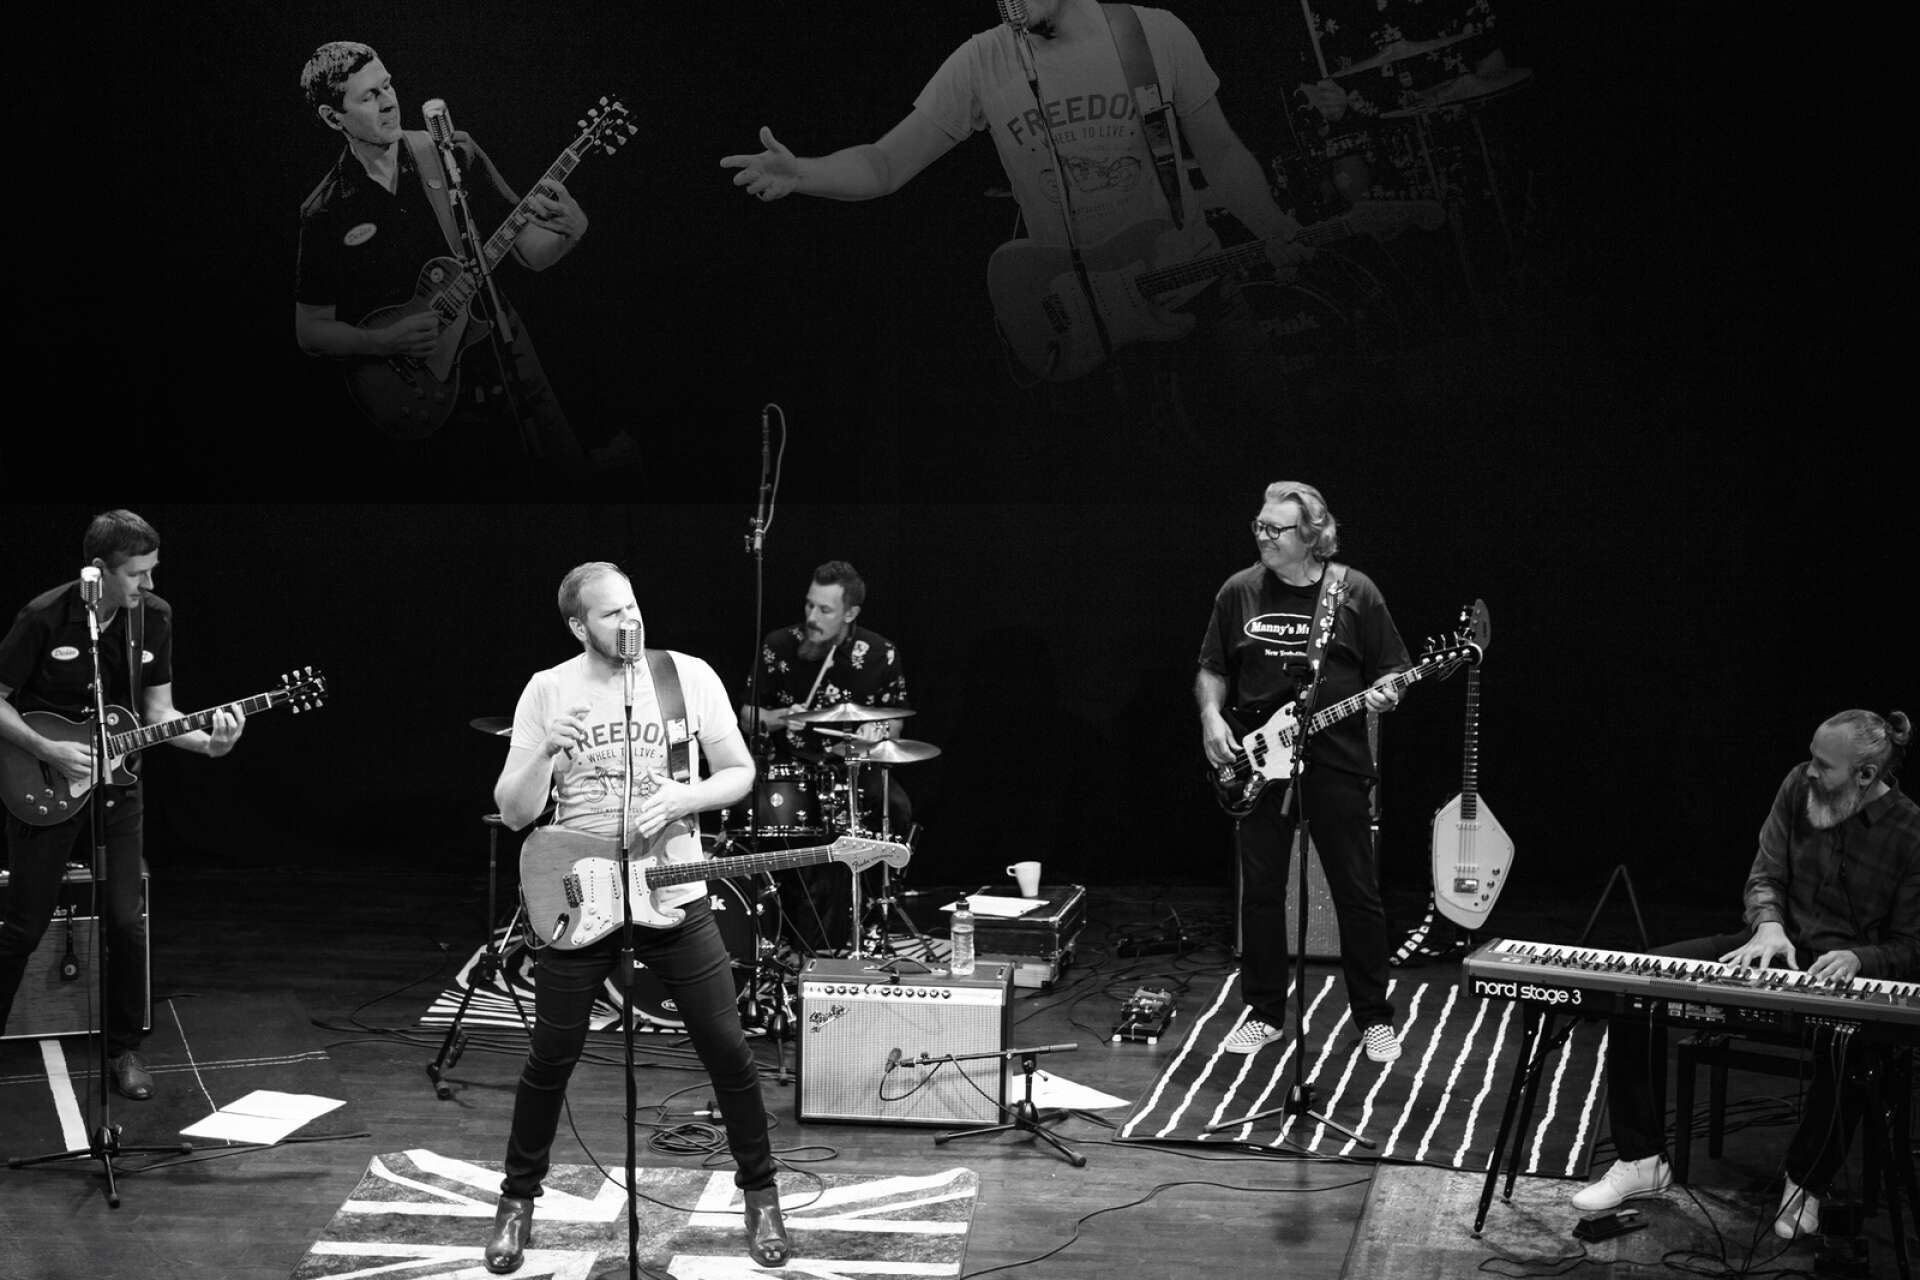 Andreas Jonsson &amp; Pink Cadillac Band ger alltid järnet på scen. Bandet består av Lars Nilsson - gitarr, Andreas Jonson - sång/gitarr, Christian Jernbro - trummor, Peter Wanngren - bas/sång och Matilda Röjdemo - piano. 